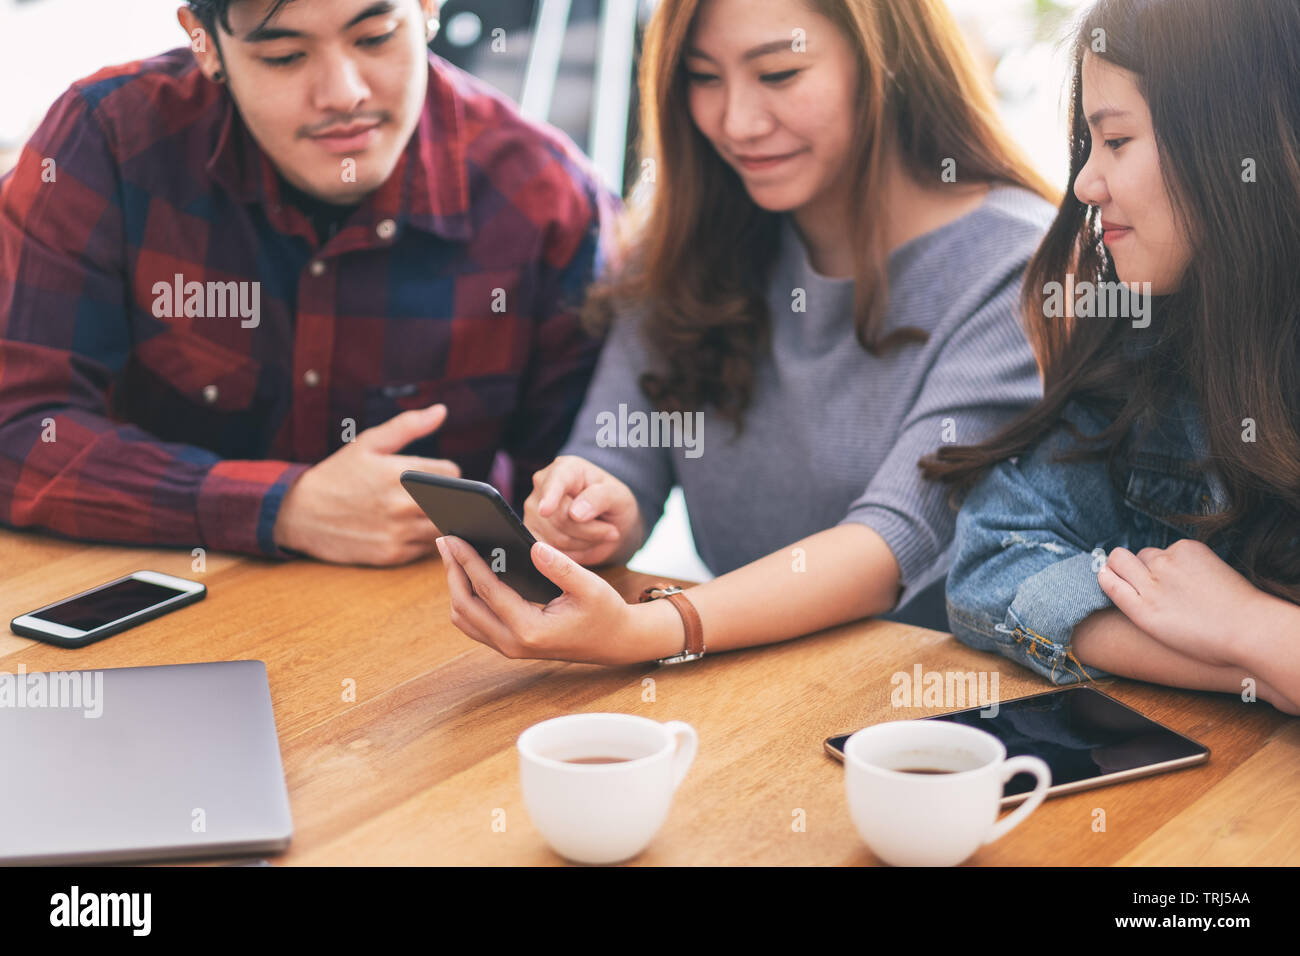 Tre giovani popoli asiatici utilizzando e guardando lo stesso telefono cellulare insieme Foto Stock